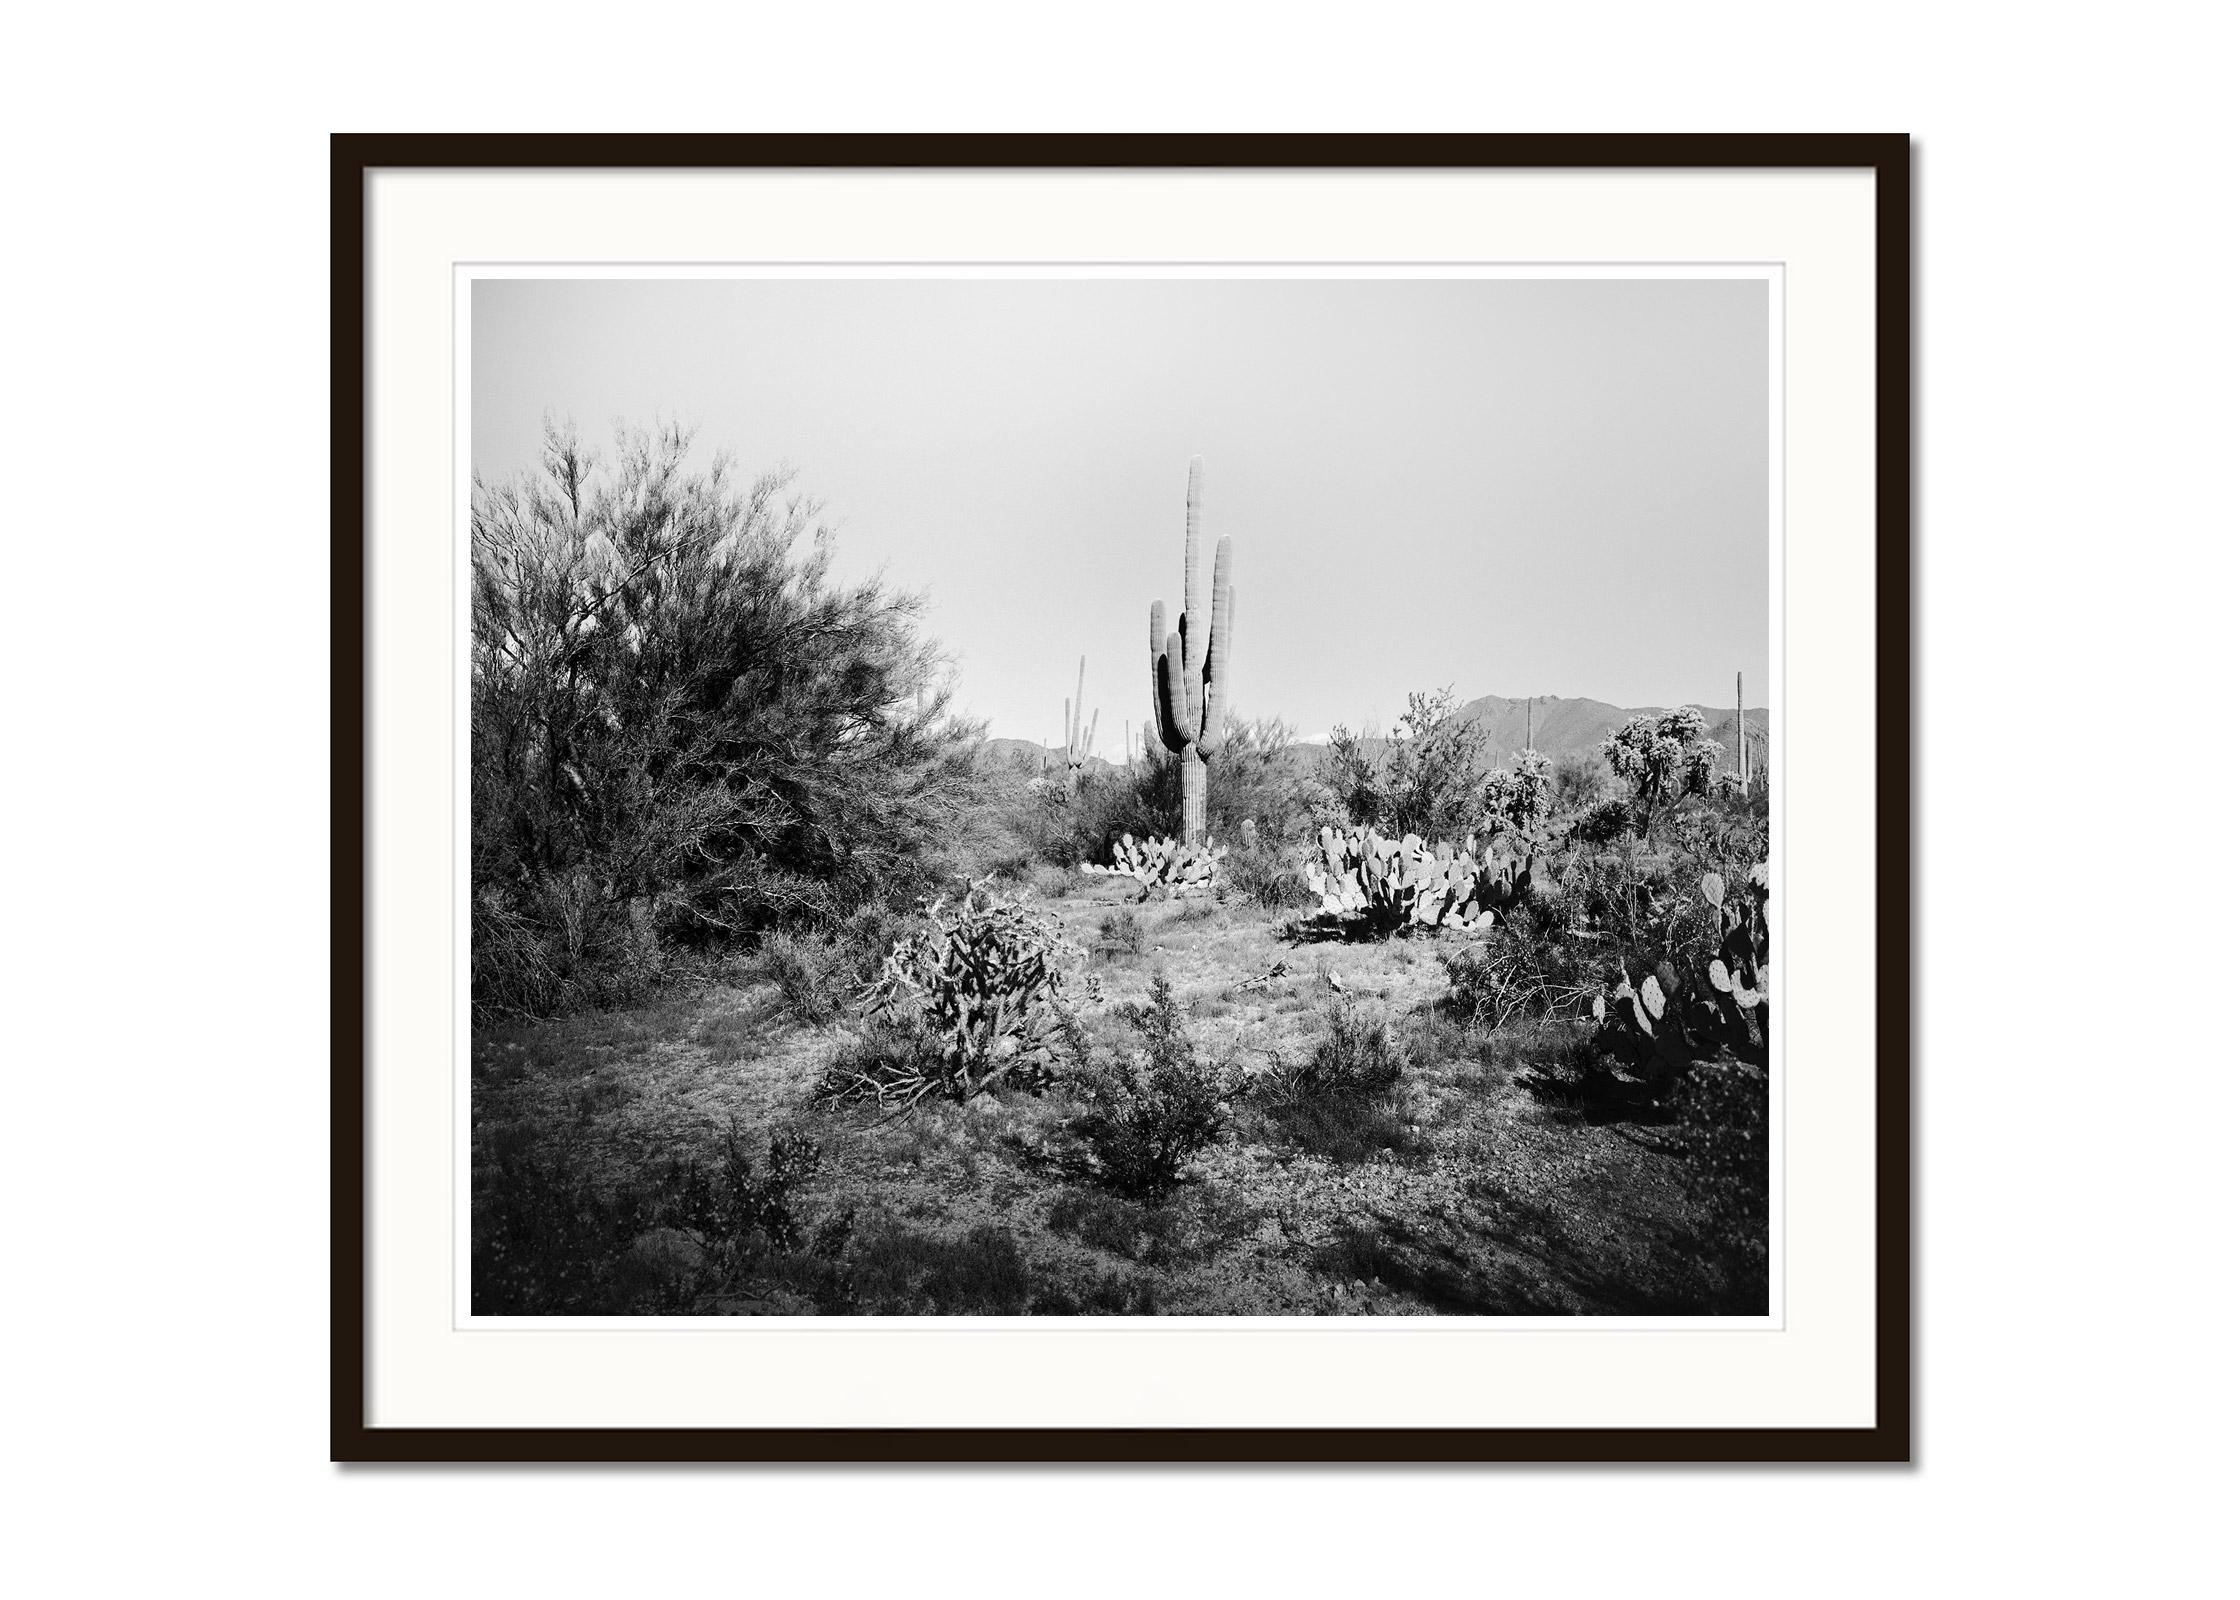 Saguaro Cactus, National Park, Arizona, USA, Schwarz-Weiß-Landschaftsfoto (Grau), Black and White Photograph, von Gerald Berghammer